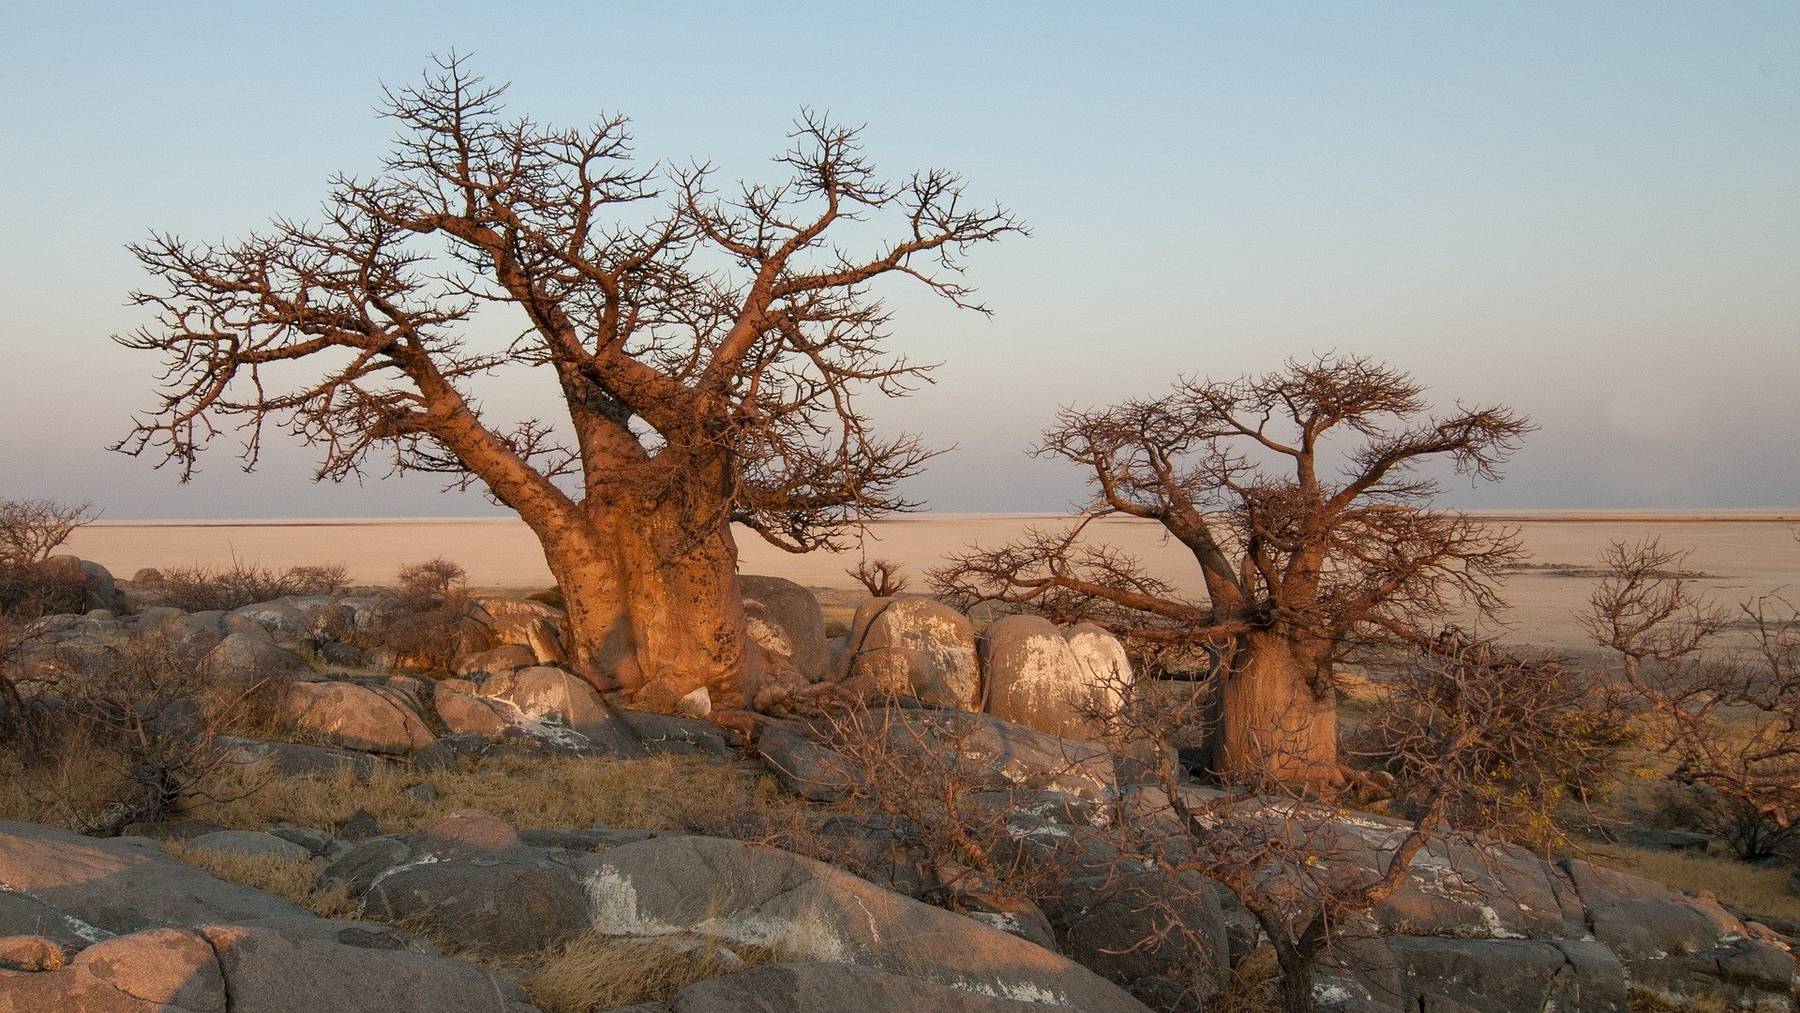 Botswana lockt mit einer ungewöhnlichen Kombination von Wüste und Flussdelta.